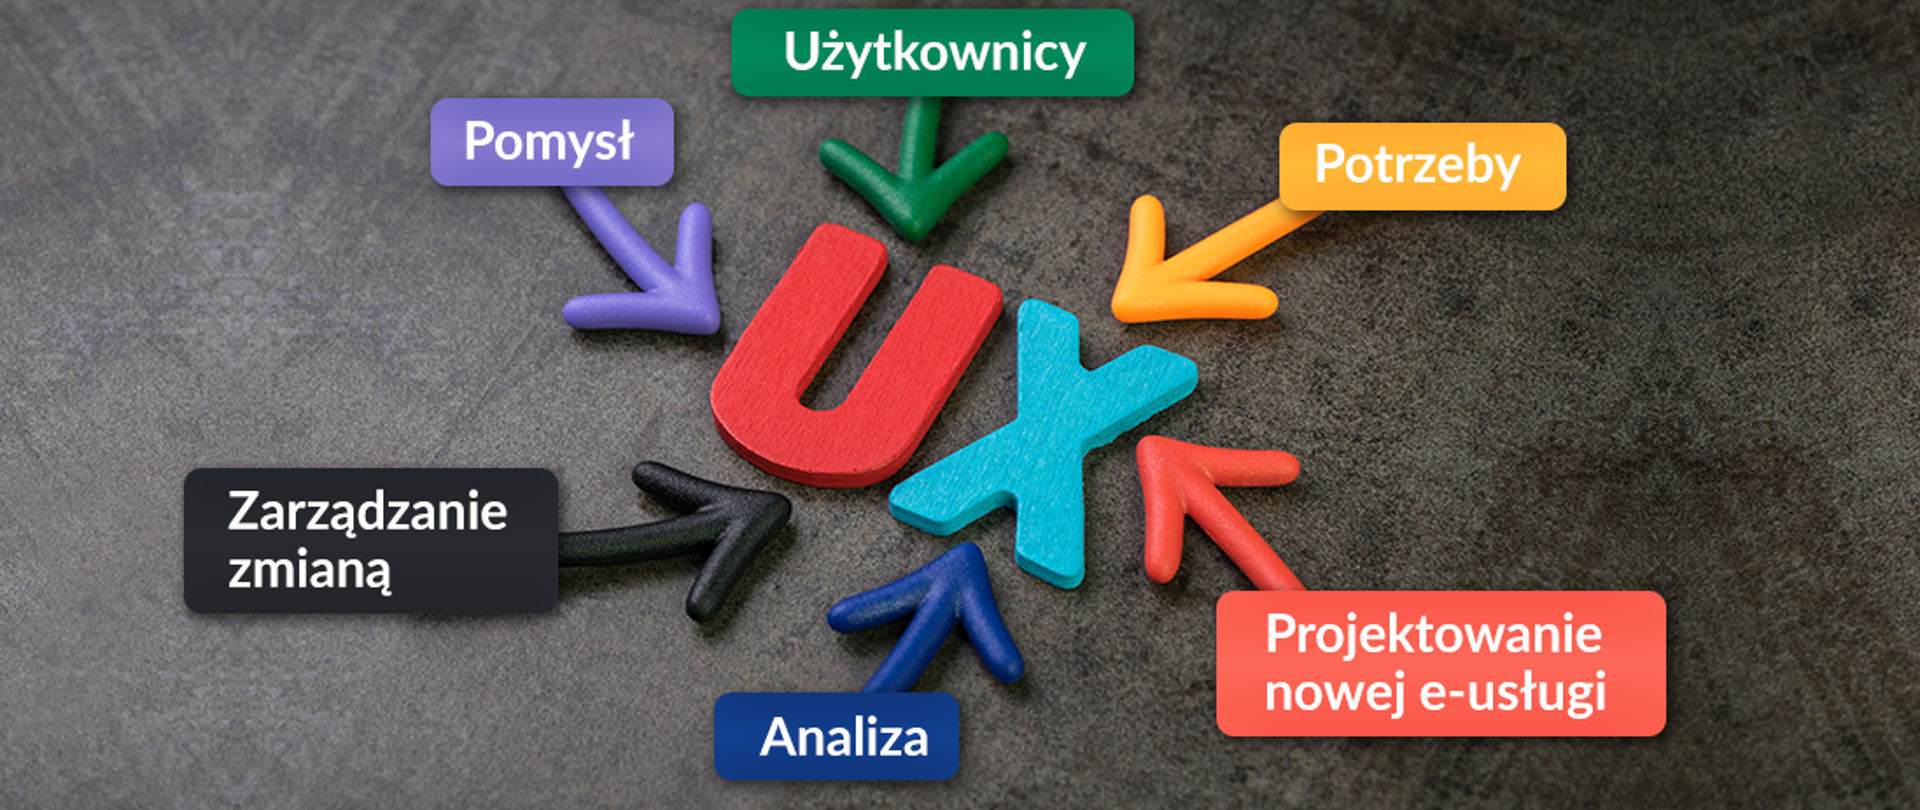 Baner z napisami, która mówią: UX to pomysł, użytkownicy, potrzeby, projektowanie nowej e-usługi, analiza, zarządzanie zmianą.